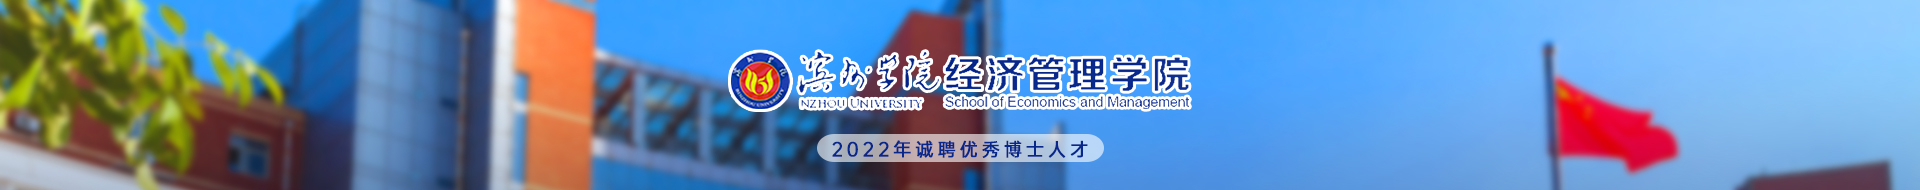 濱州學院經濟管理學院